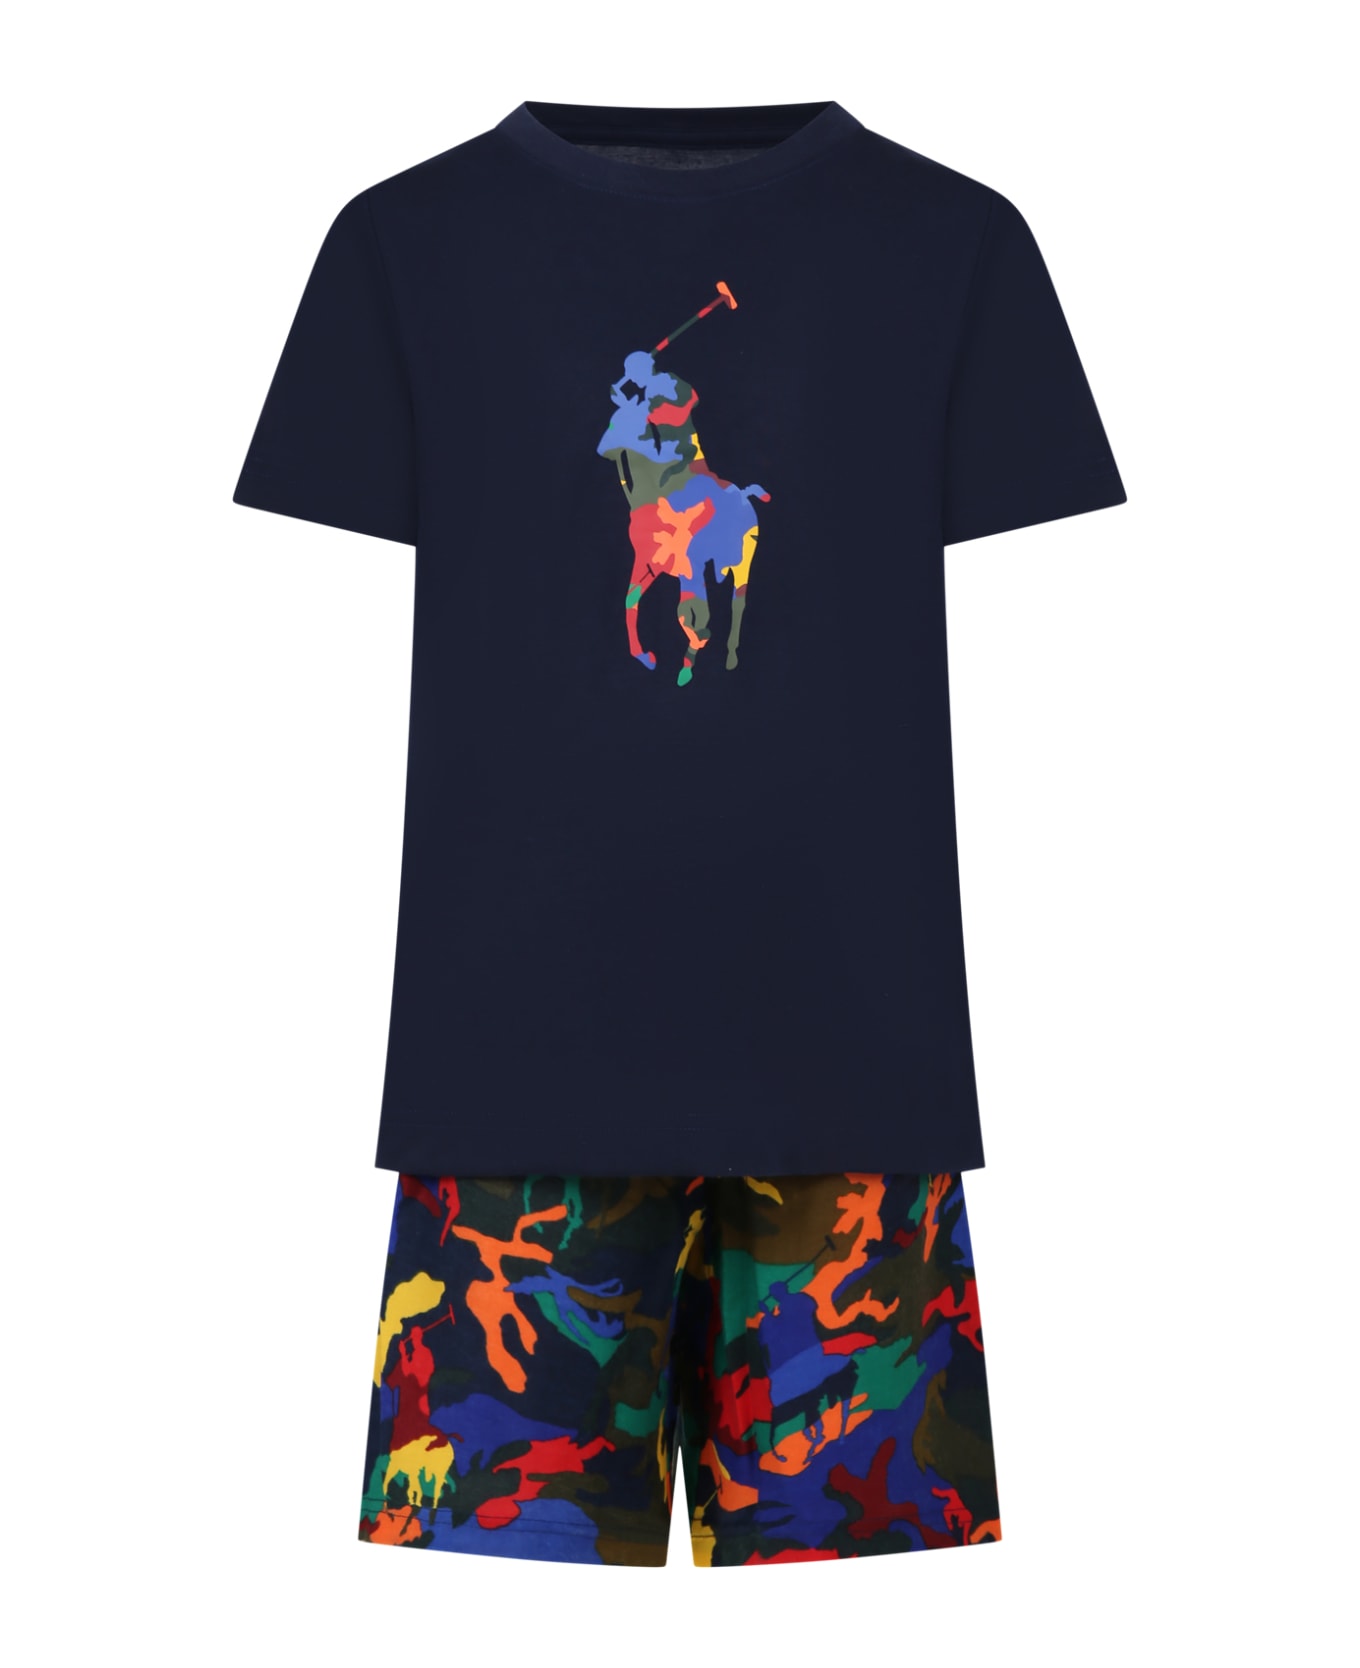 Ralph Lauren Multicolored Pajamas For Boy - Multicolor